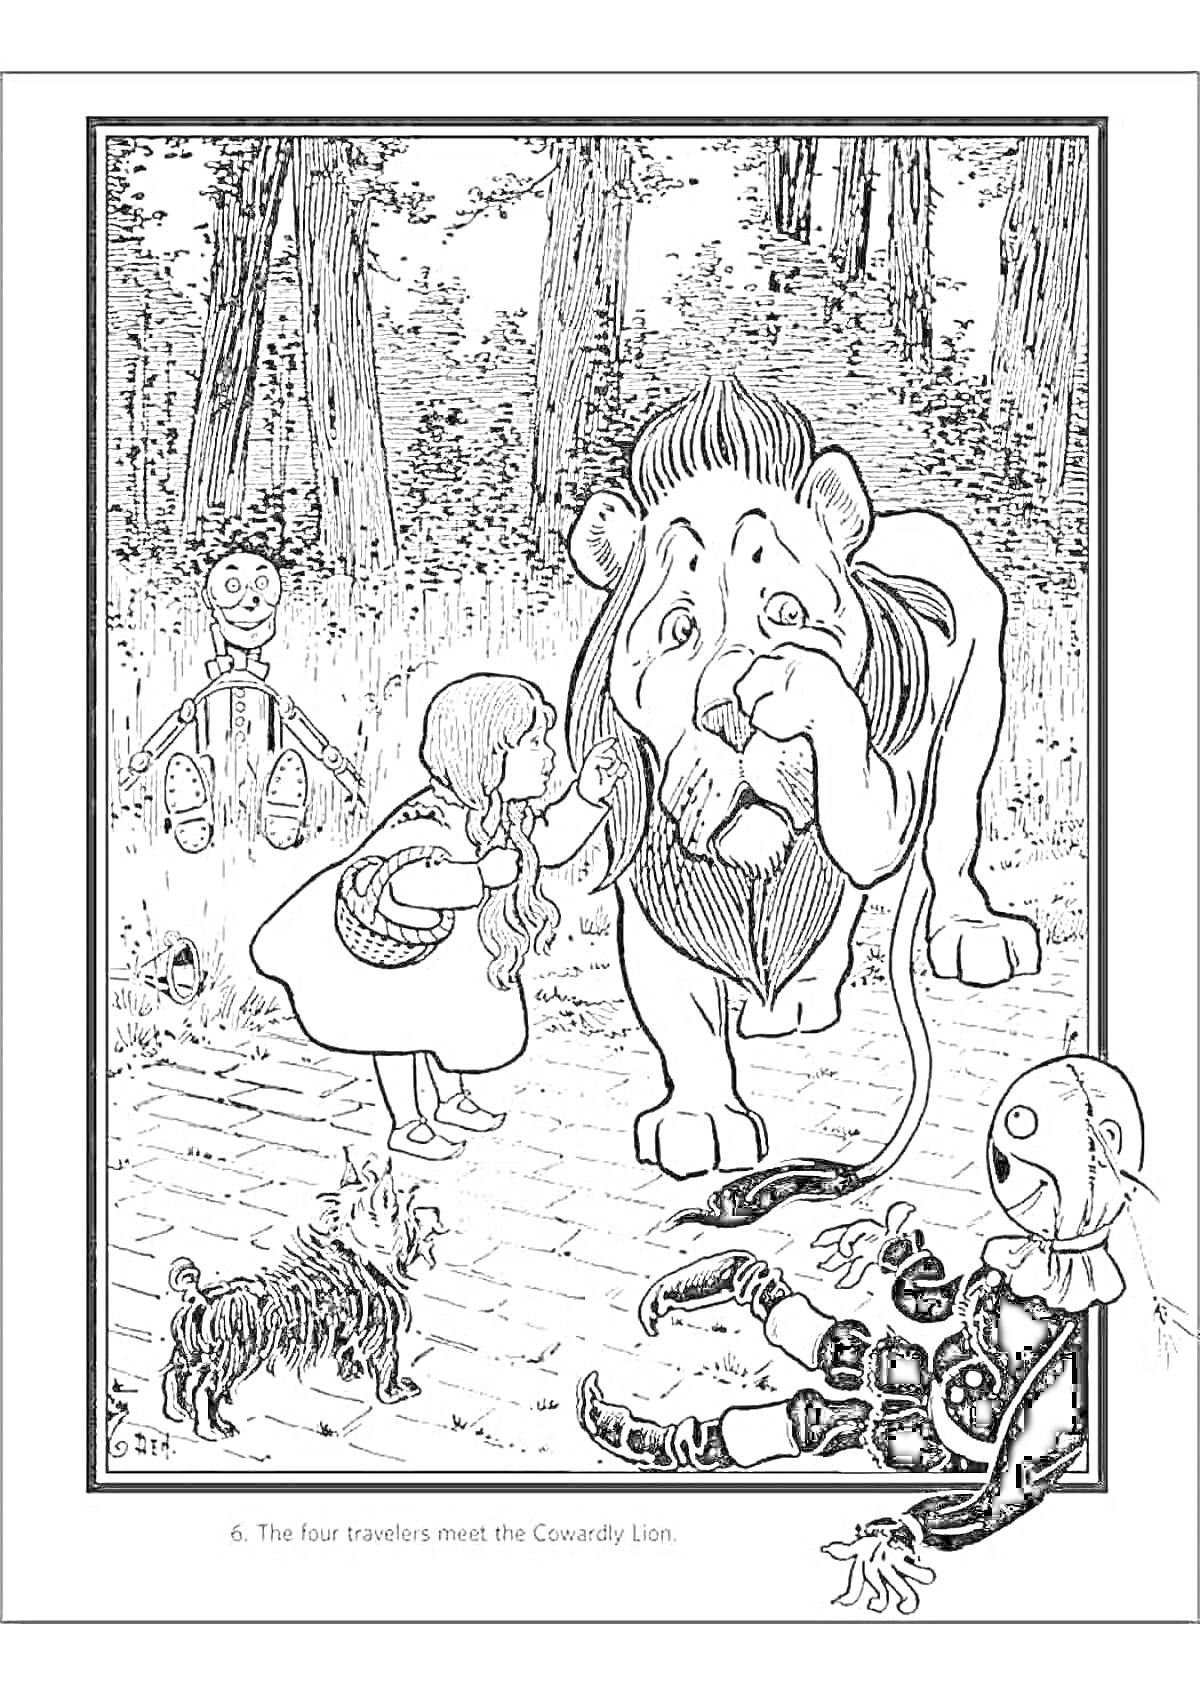 Элли и ее друзья встречают Трусливого Льва в лесу